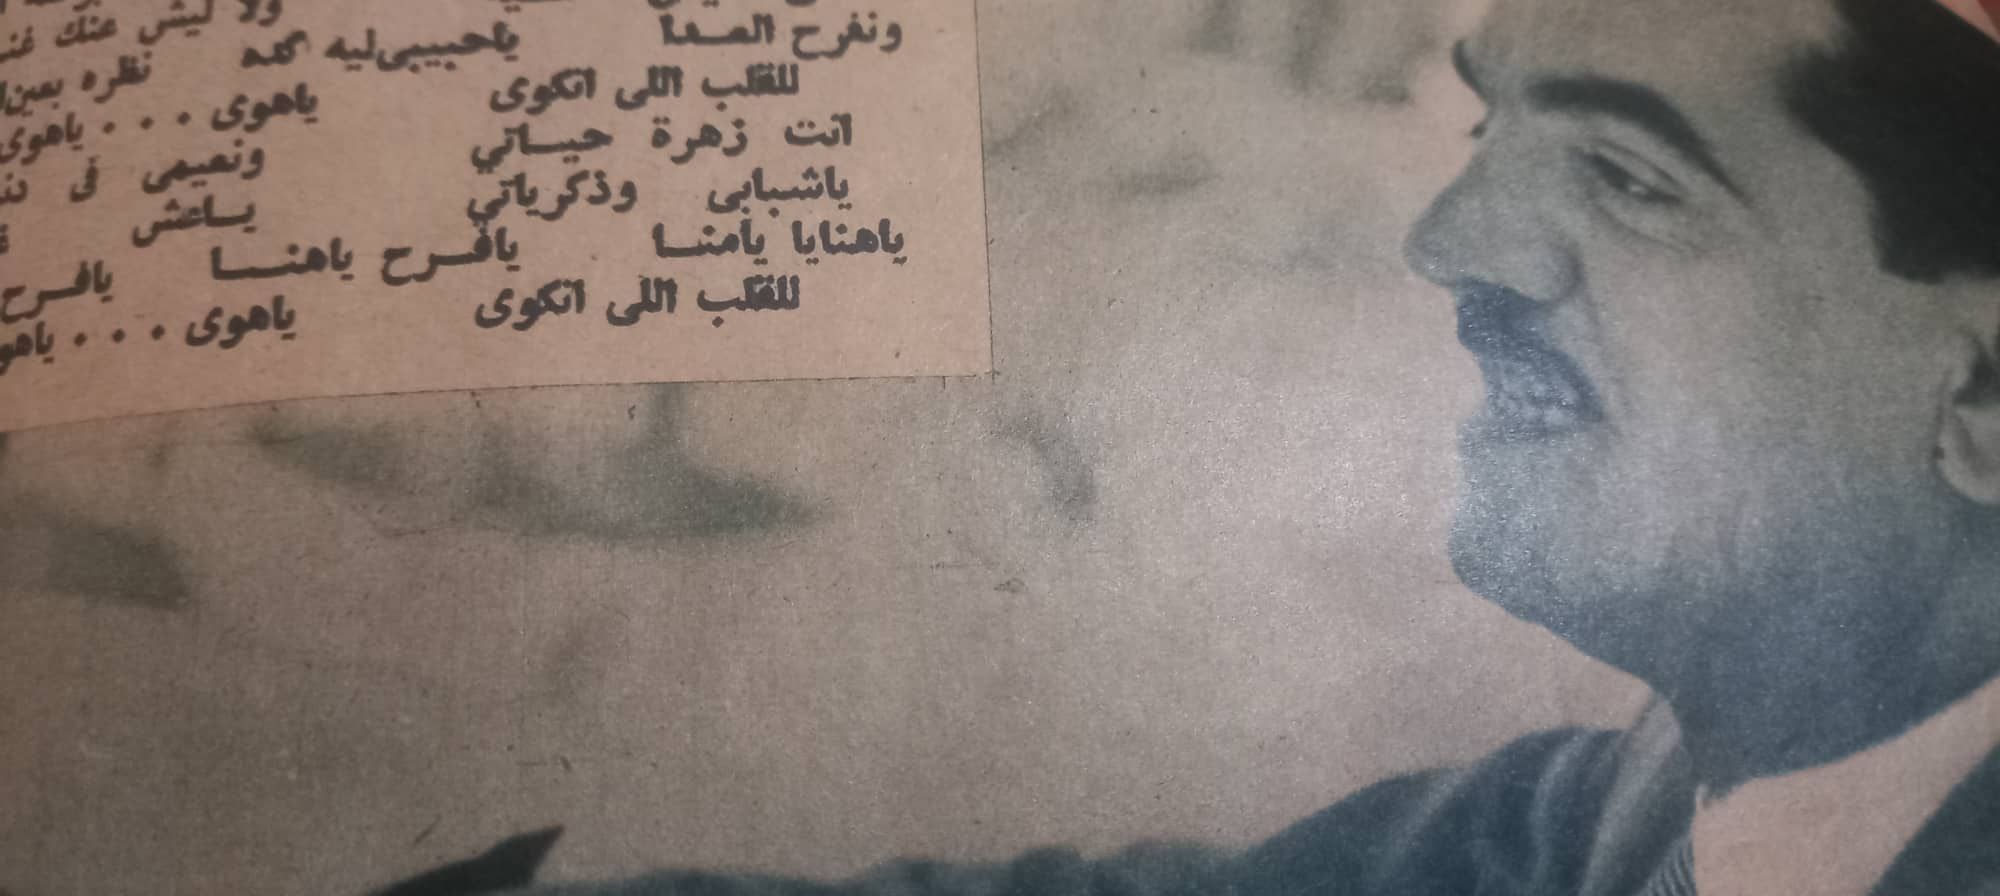 الفنان محمد عبد المطلب في أرشيف مجلة الفن عام 1950